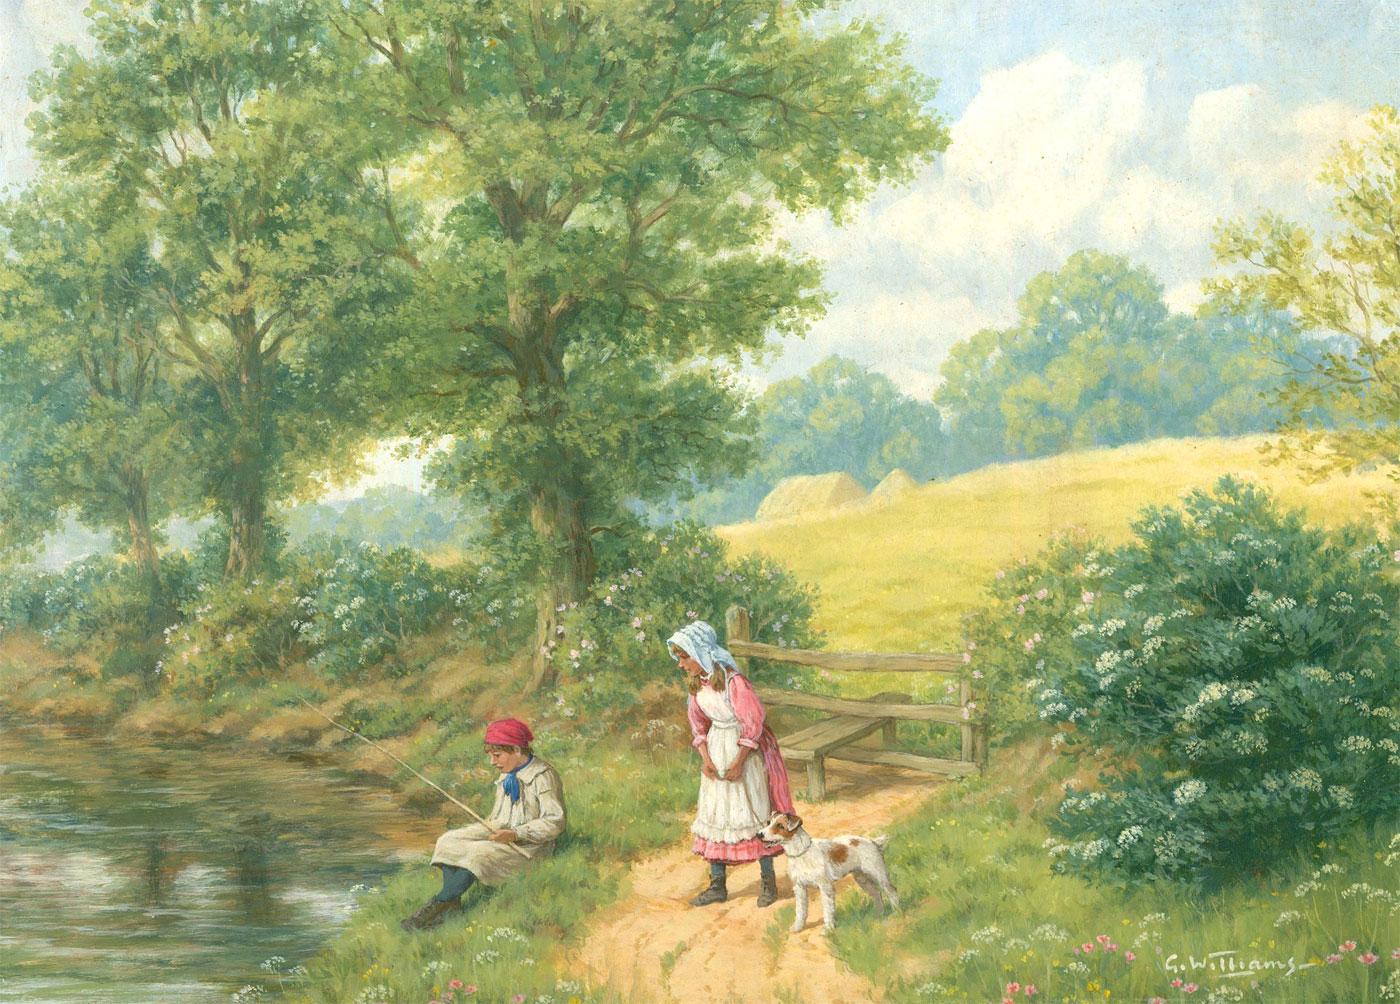 Une scène charmante représentant une jeune fille et un garçon au bord de la rivière. Le garçon lance une canne à pêche dans la rivière, tandis que la fille et son fidèle terrier observent. Signé en bas à droite. Informations biographiques sur